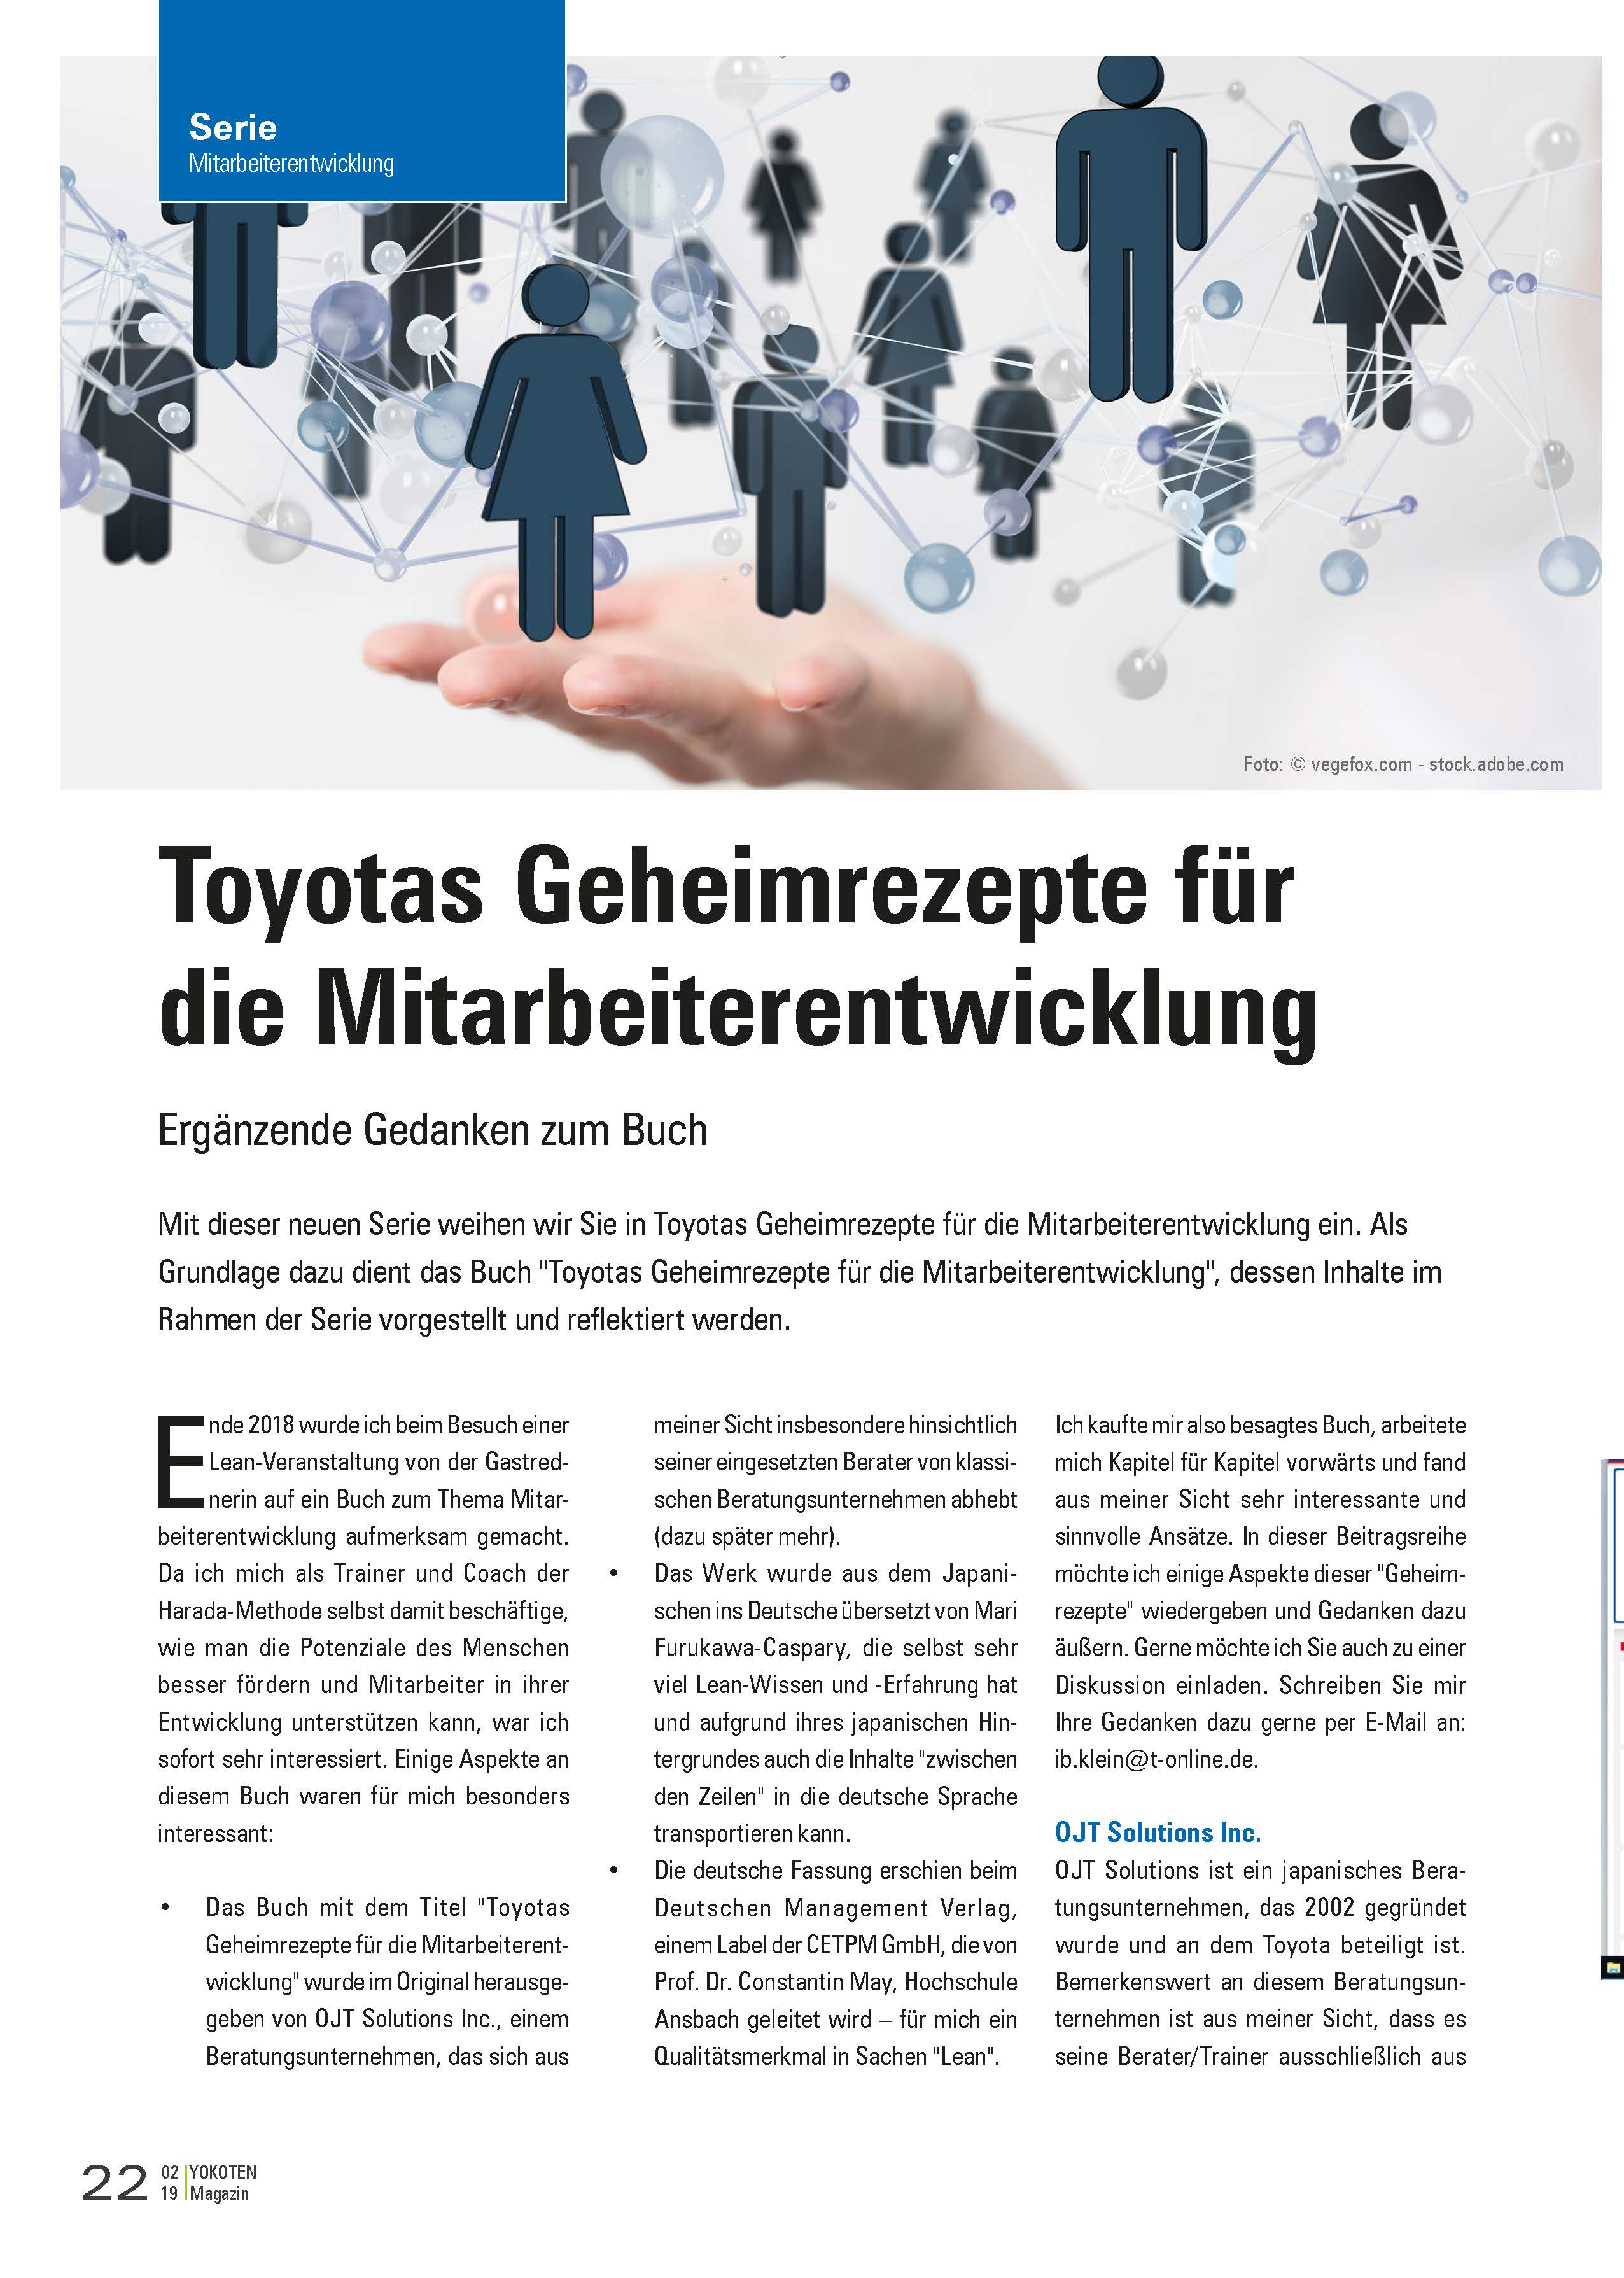 Toyotas Geheimrezepte für die Mitarbeiterentwicklung - Artikel aus Fachmagazin YOKOTEN 2020-02